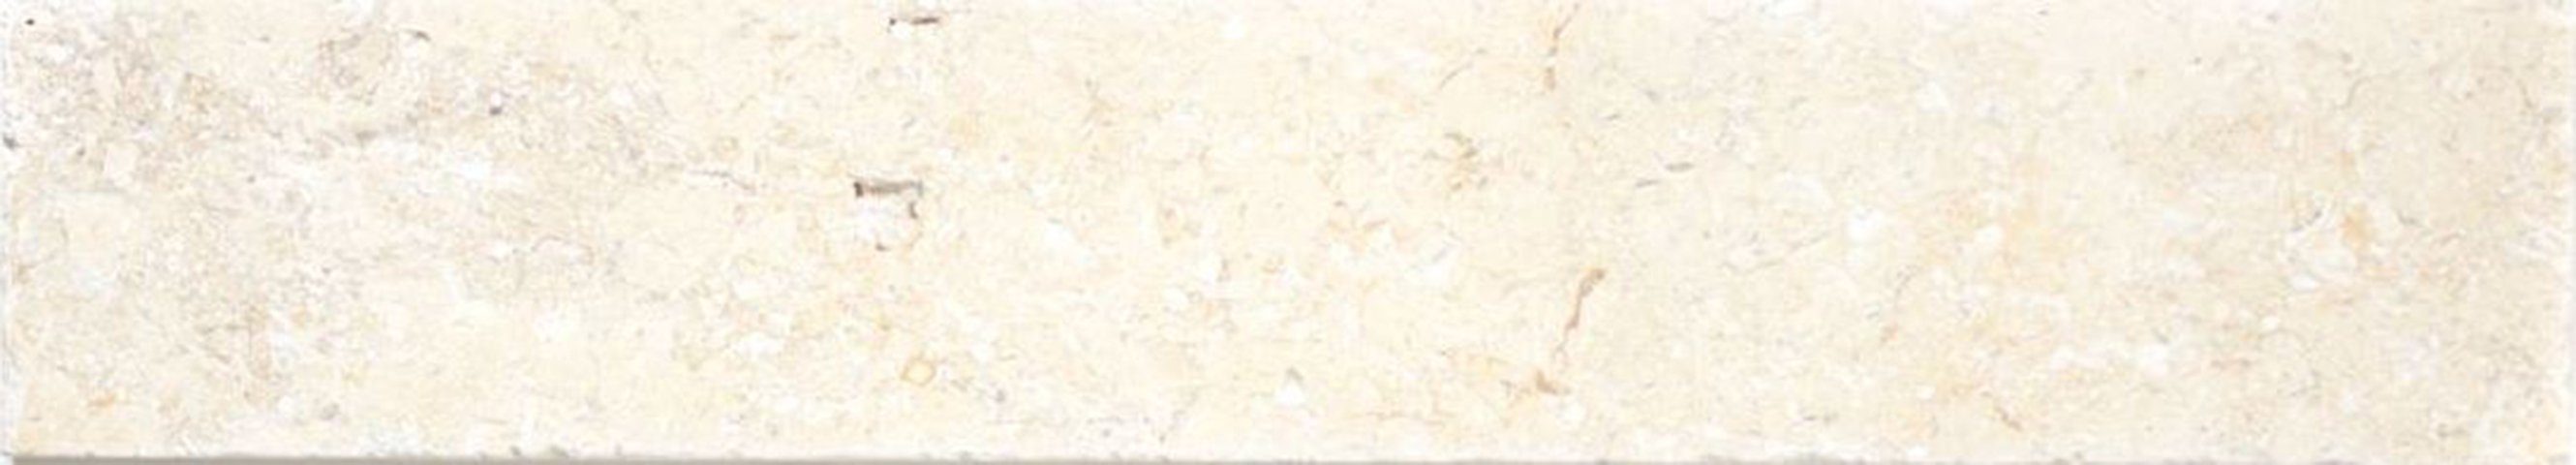 Mosani Sockelfliese Sockel Kalkstein Naturstein Limestone weißgelb beige